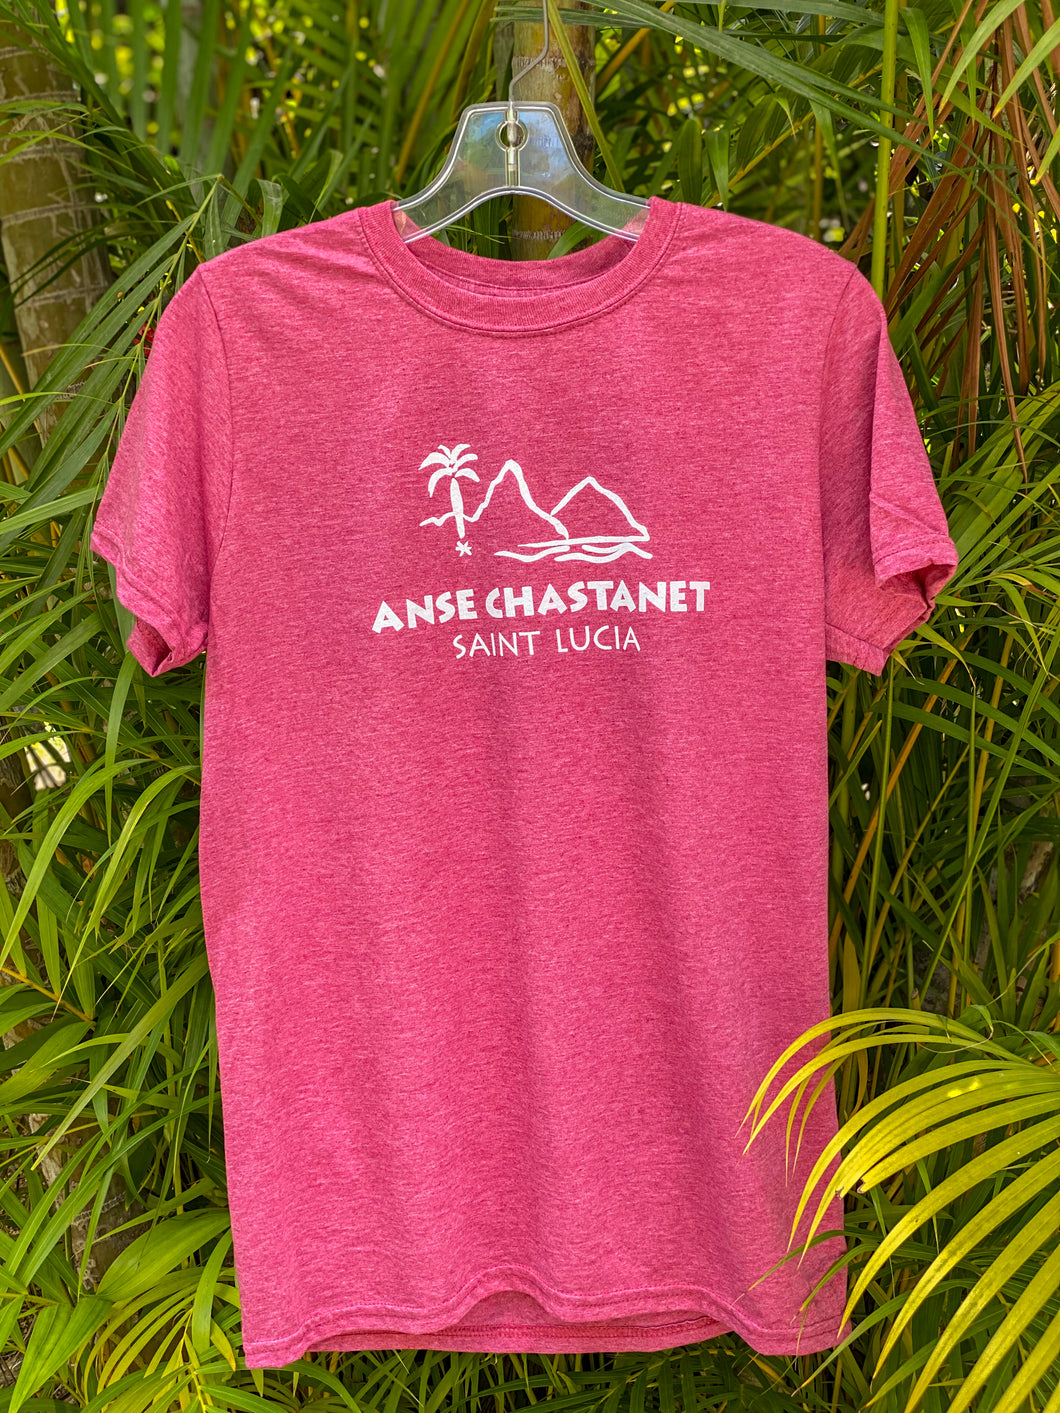 Anse Chastanet Men's T-Shirt Crew Neck